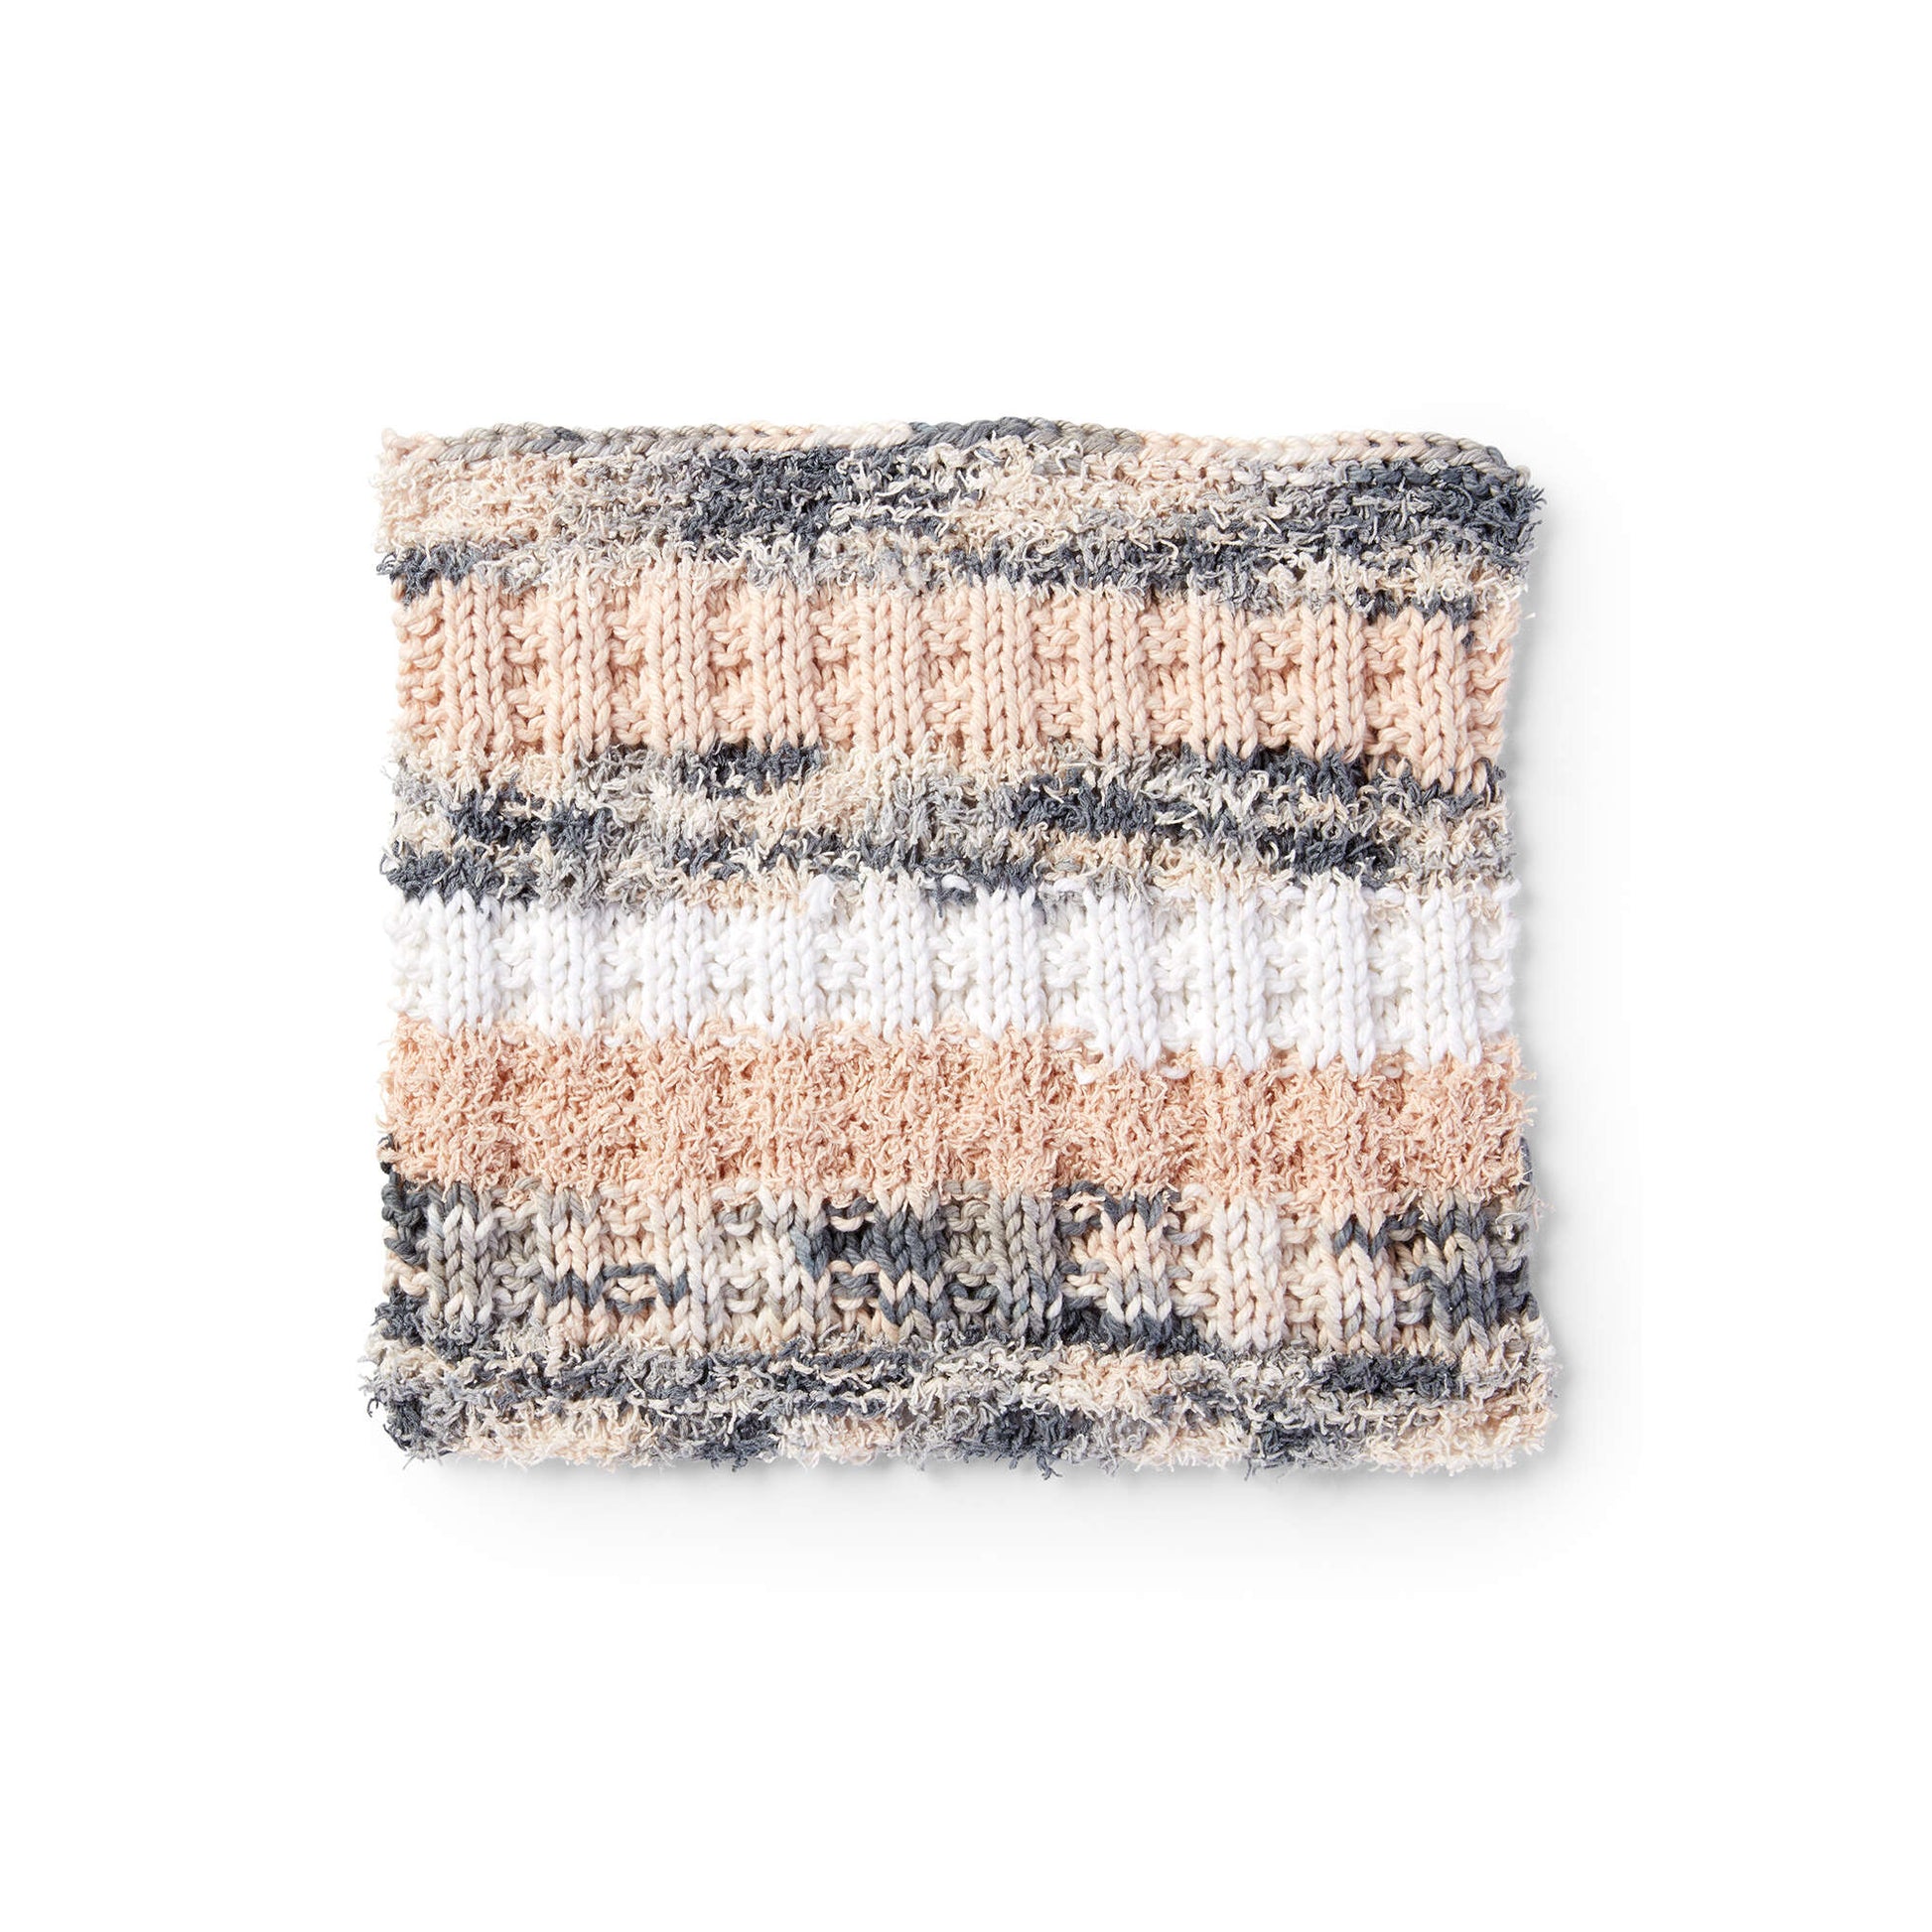 Free Lily Sugar'n Cream Scrubbing Stripes Knit Dishcloth Pattern